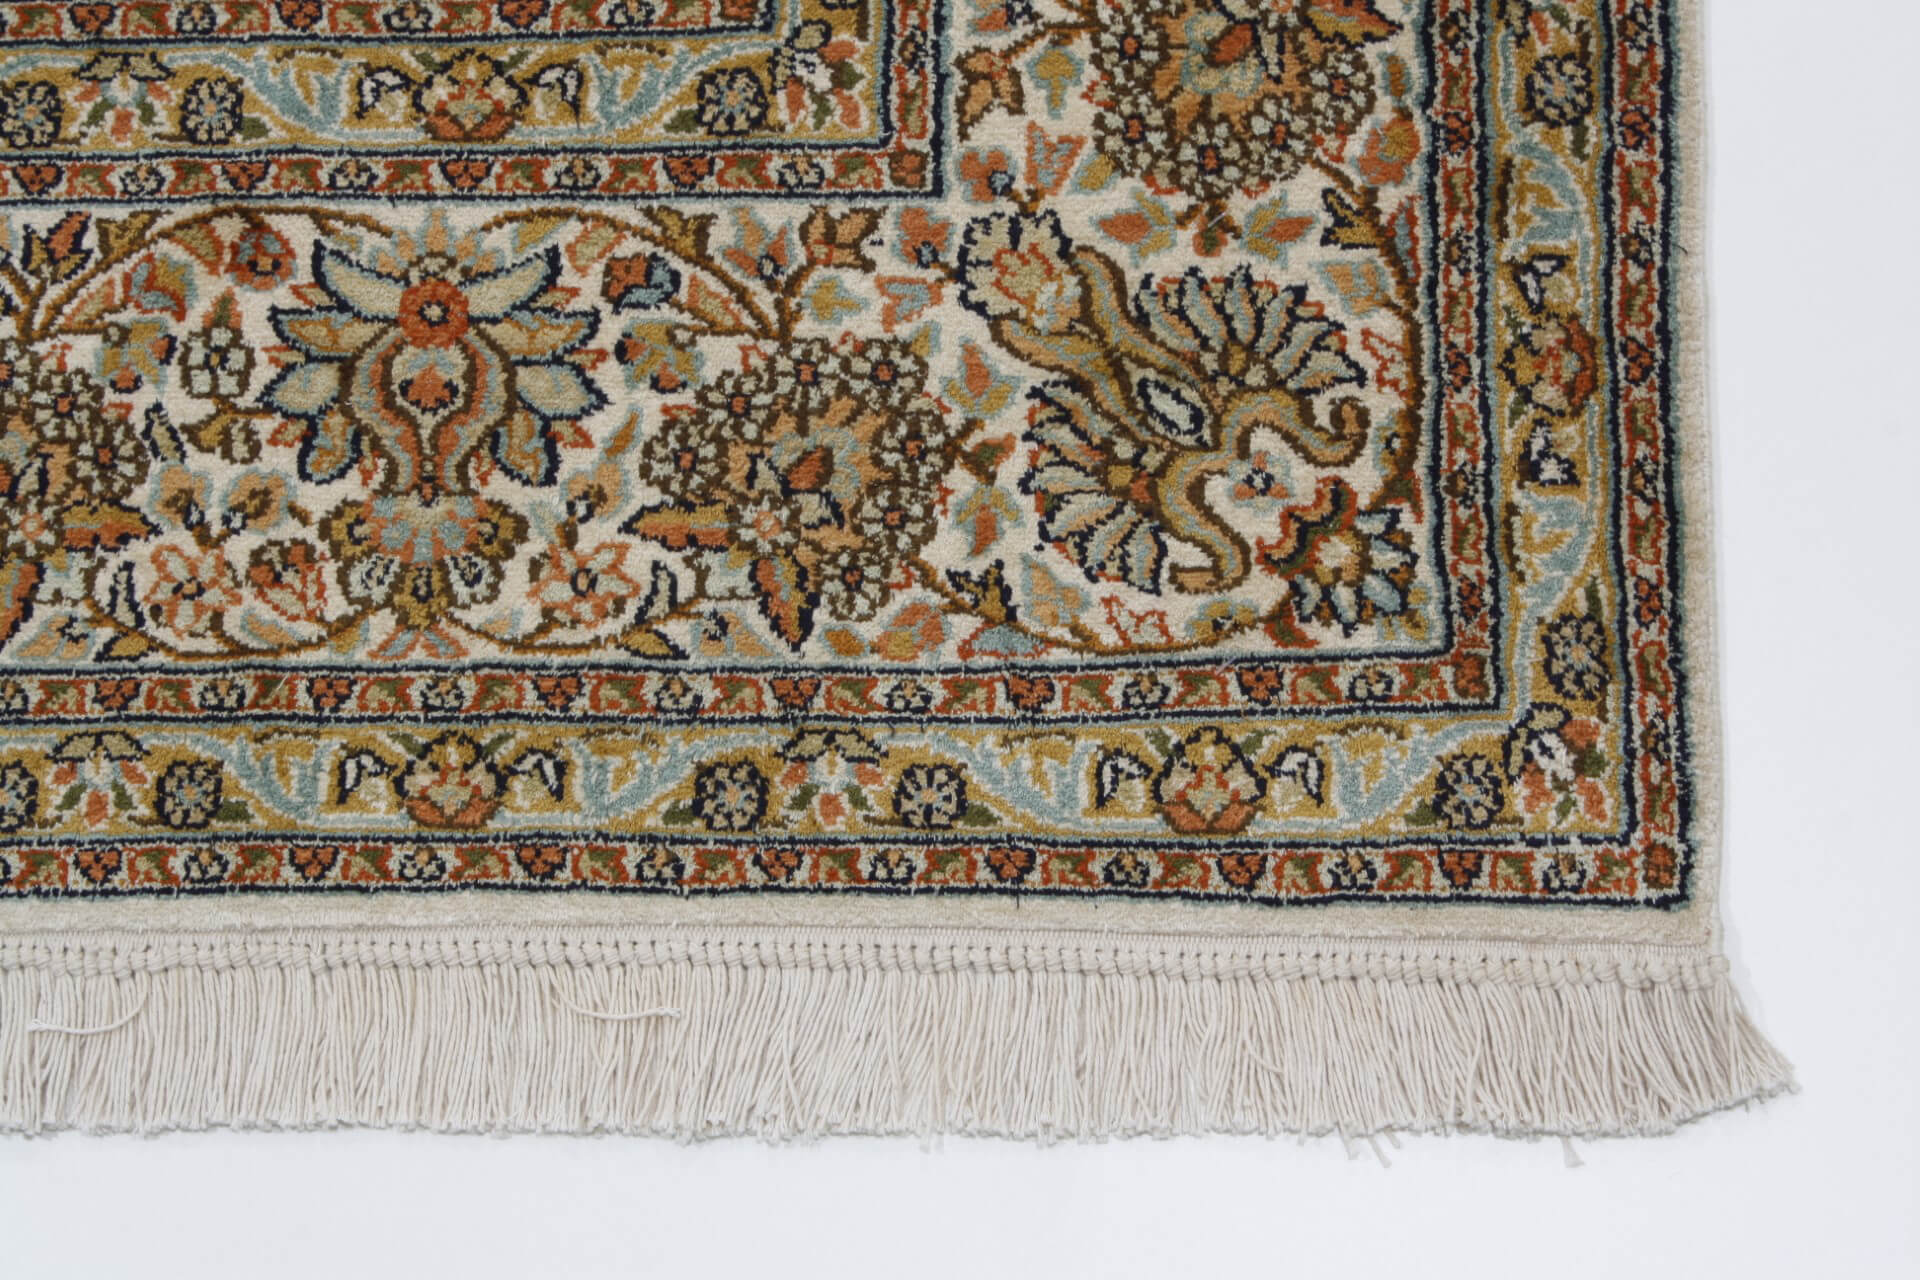 Orientální koberec Kashmir Silk Exclusive